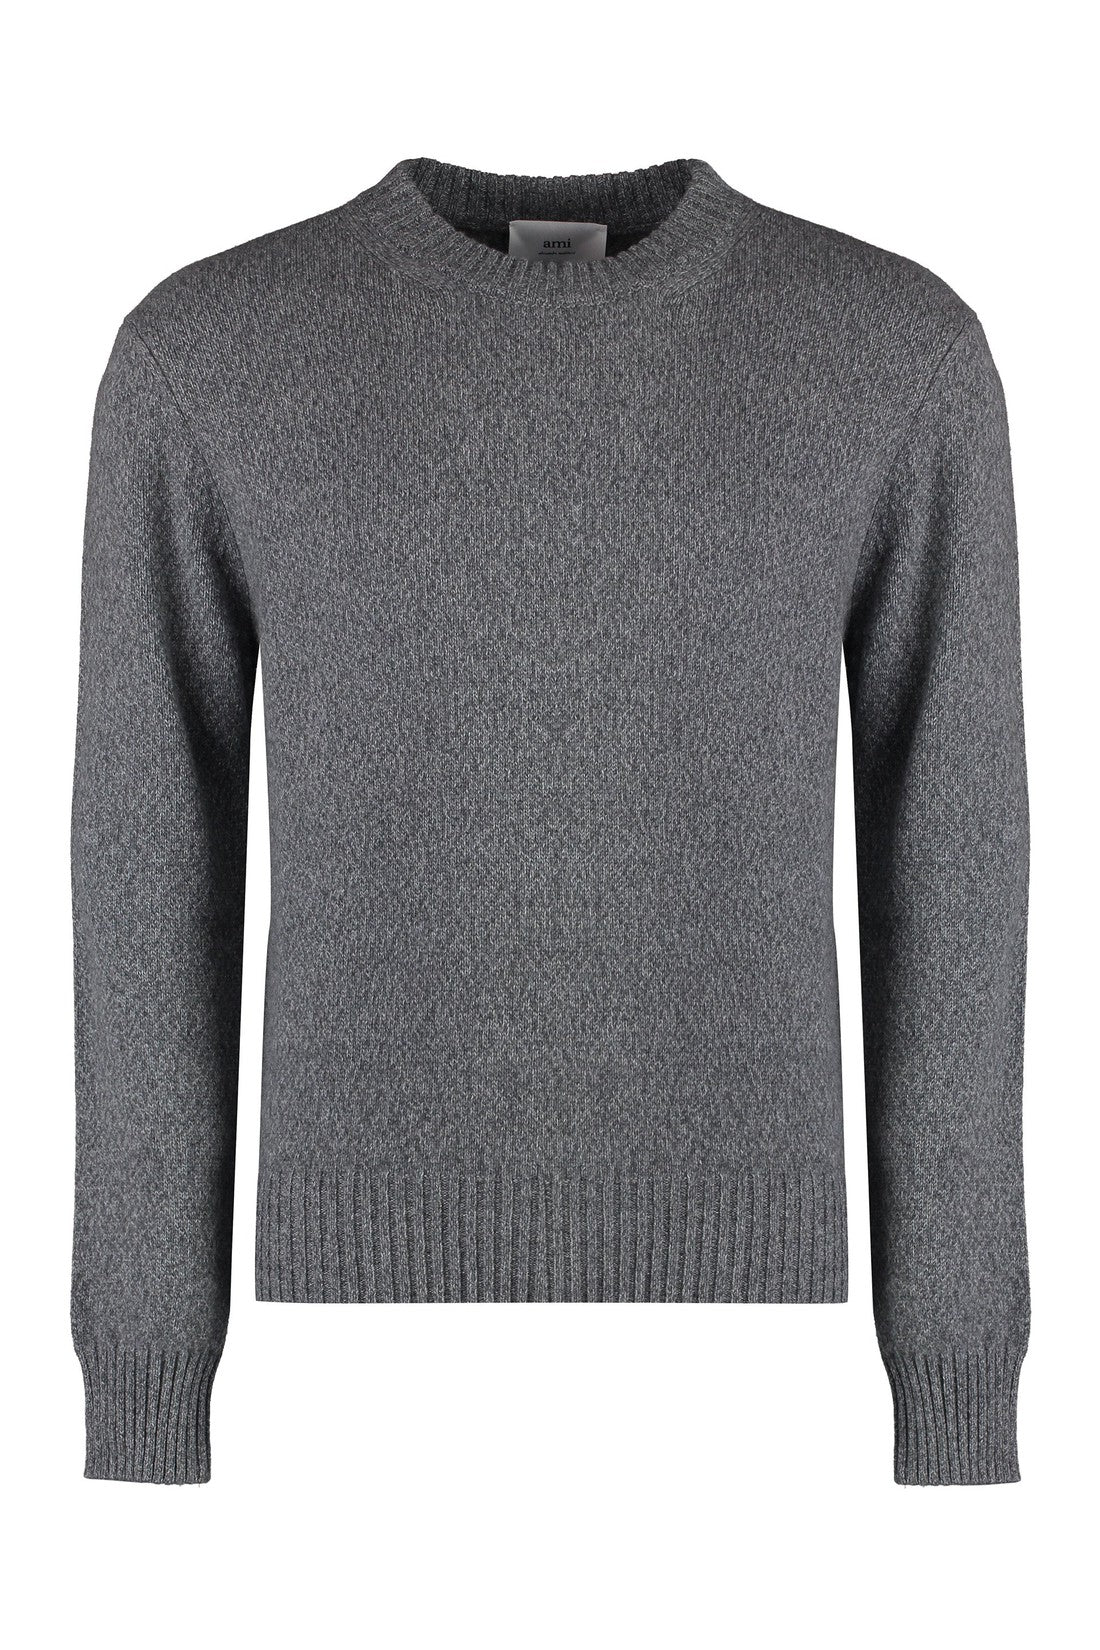 AMI PARIS-OUTLET-SALE-Crew-neck cashmere sweater-ARCHIVIST